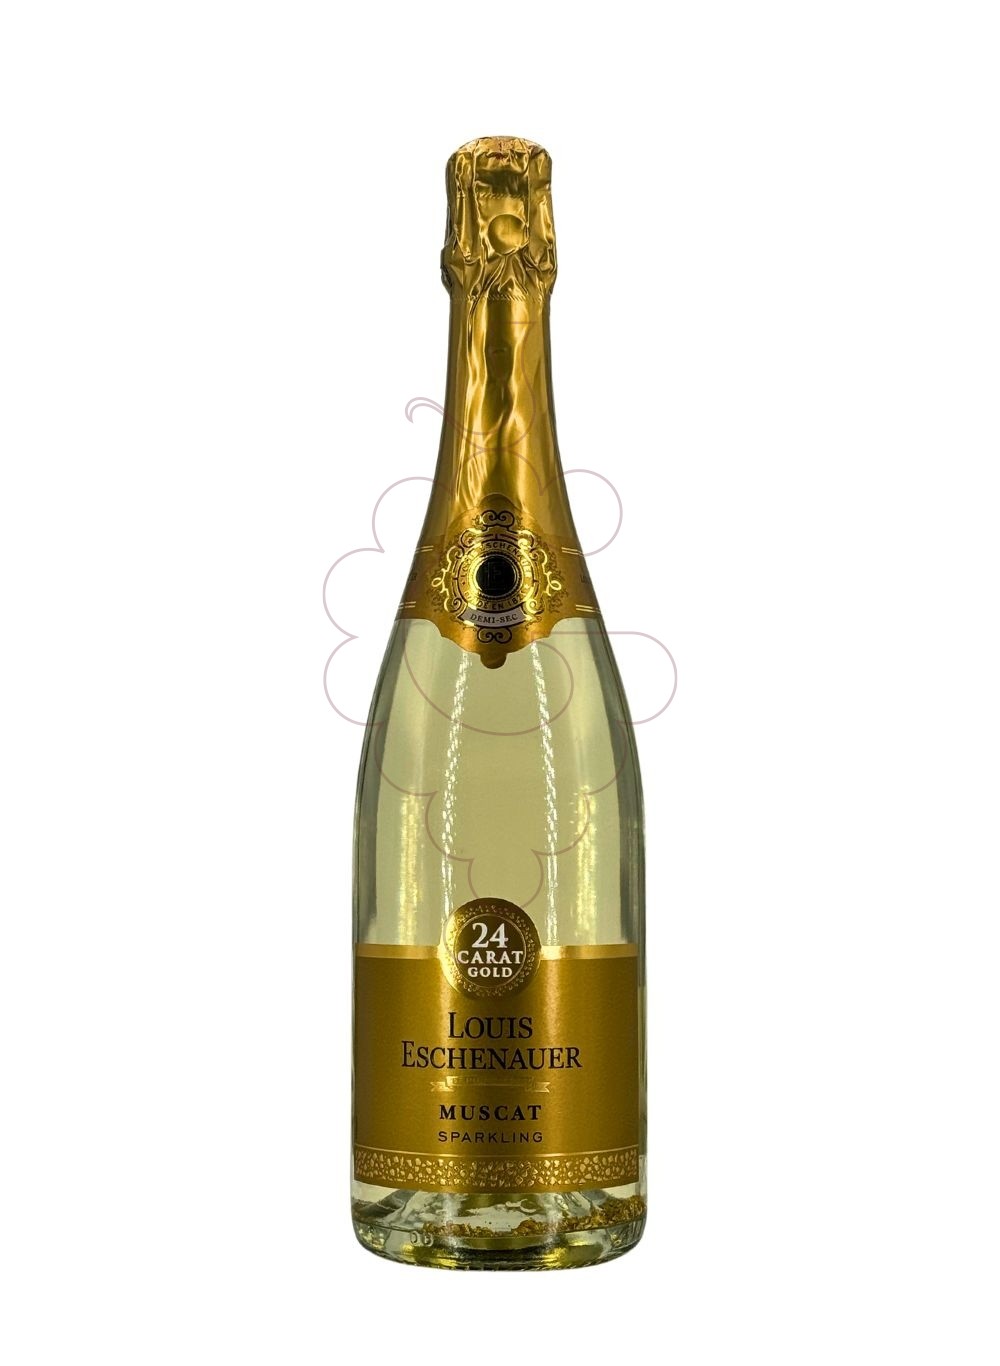 Foto Louis eschenauer 24 carat gold vino espumoso